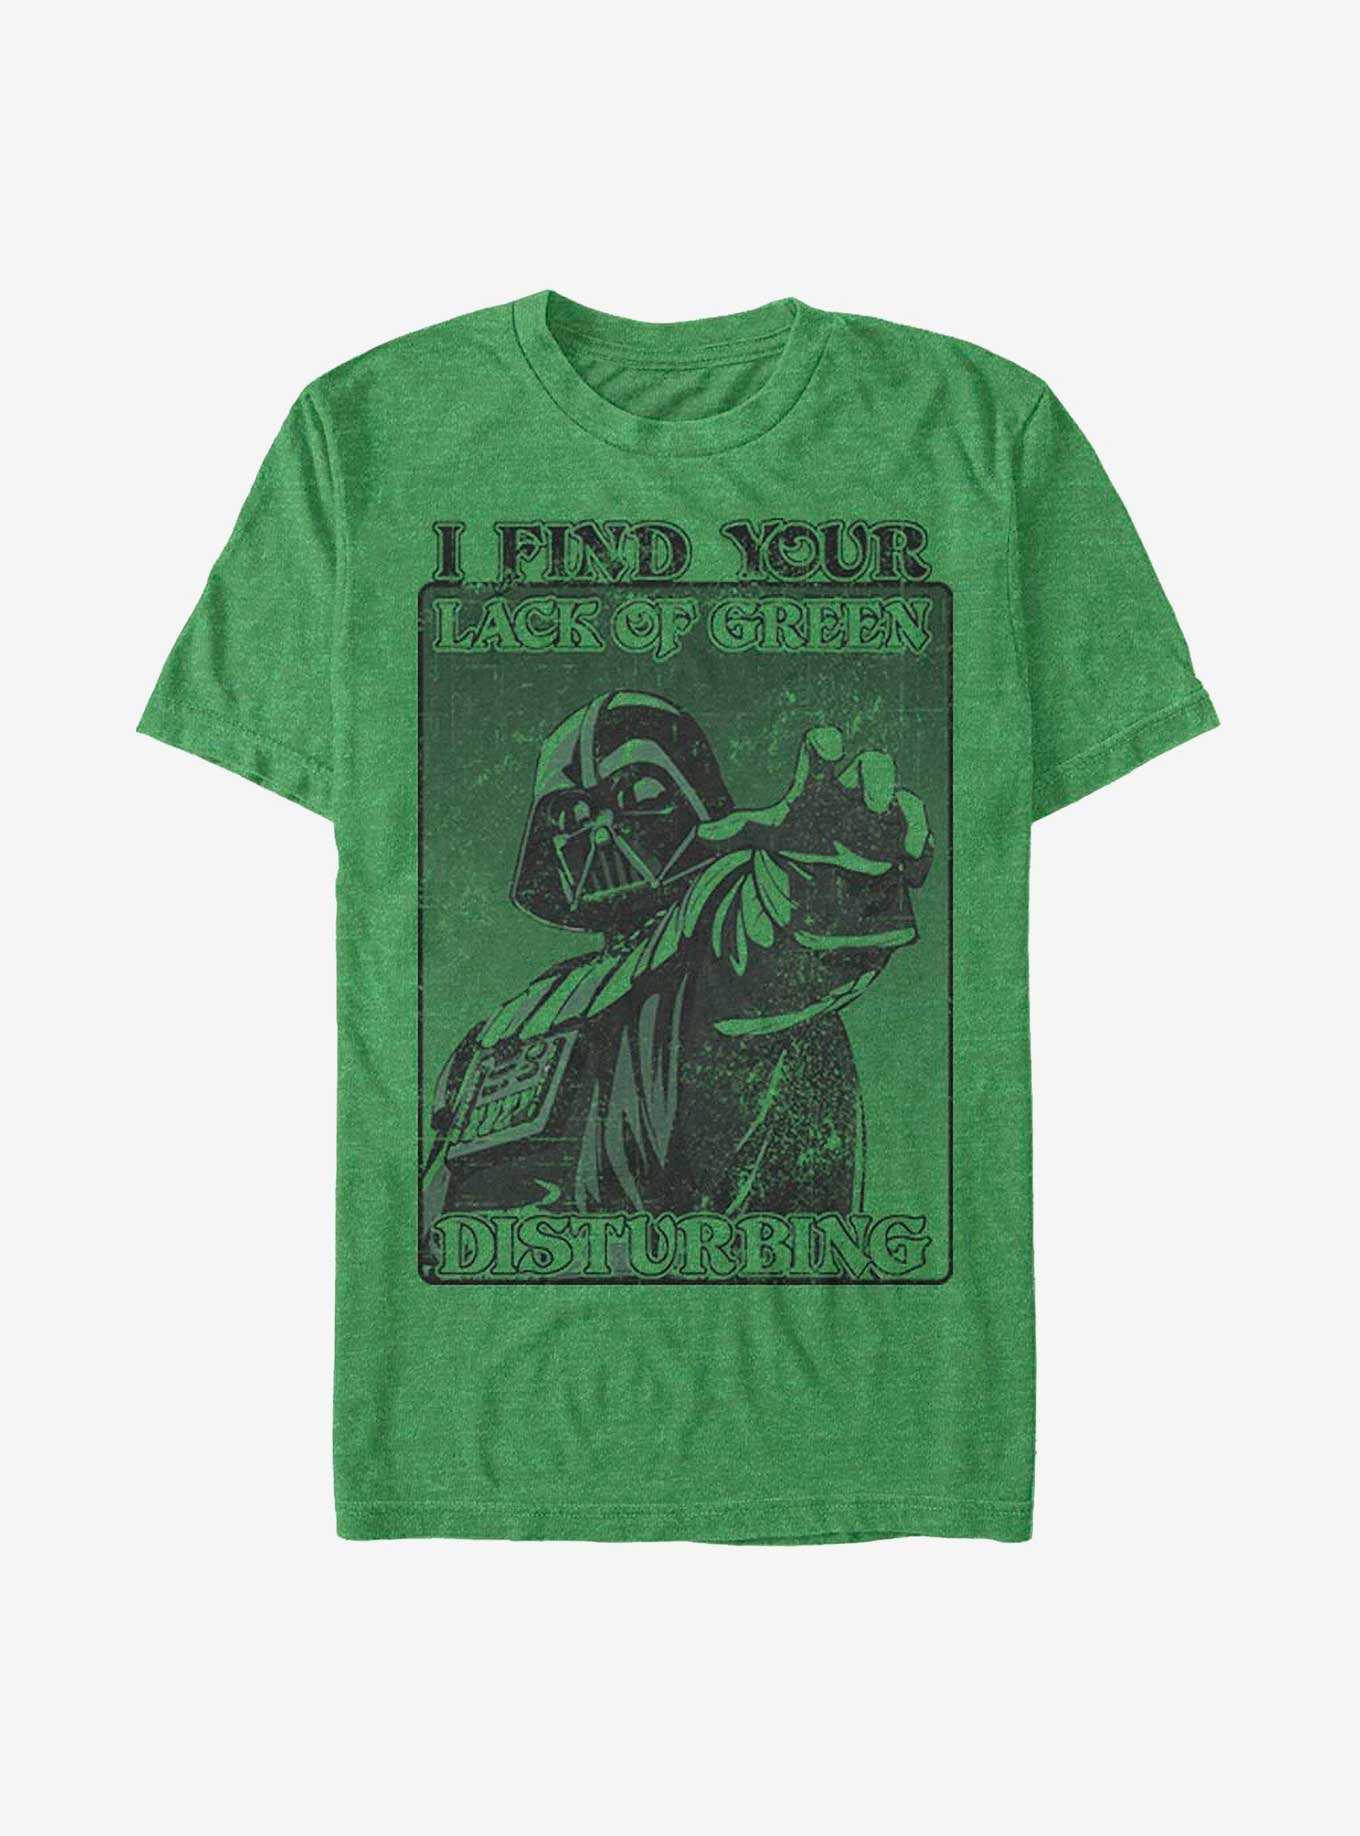 Star Wars Darth Vader Mean Green T-Shirt, , hi-res